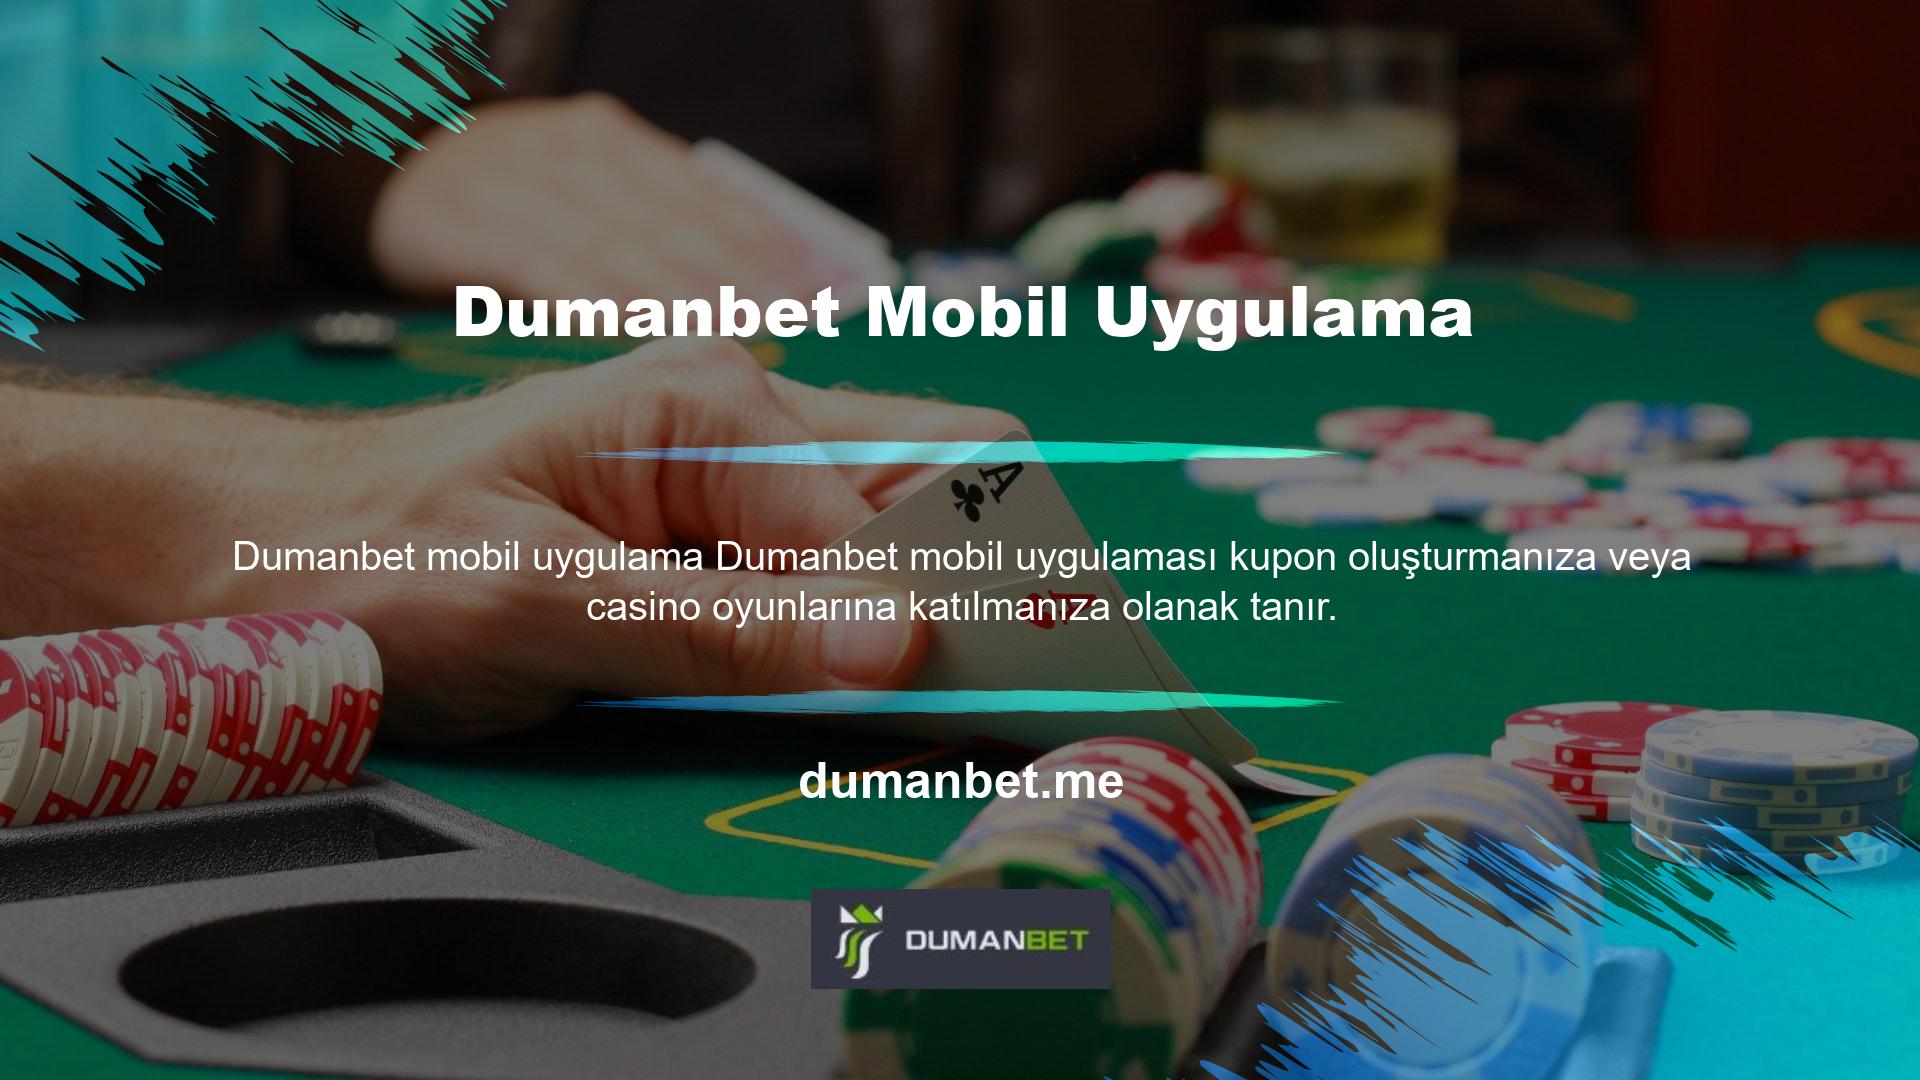 Artık Dumanbet mobil uygulamasına herhangi bir internet konumundan erişebilir, yeni giriş bağlantısını kullanabilir ve yüksek ödemelerle heyecan verici casino oyunları oynamaya başlayabilirsiniz